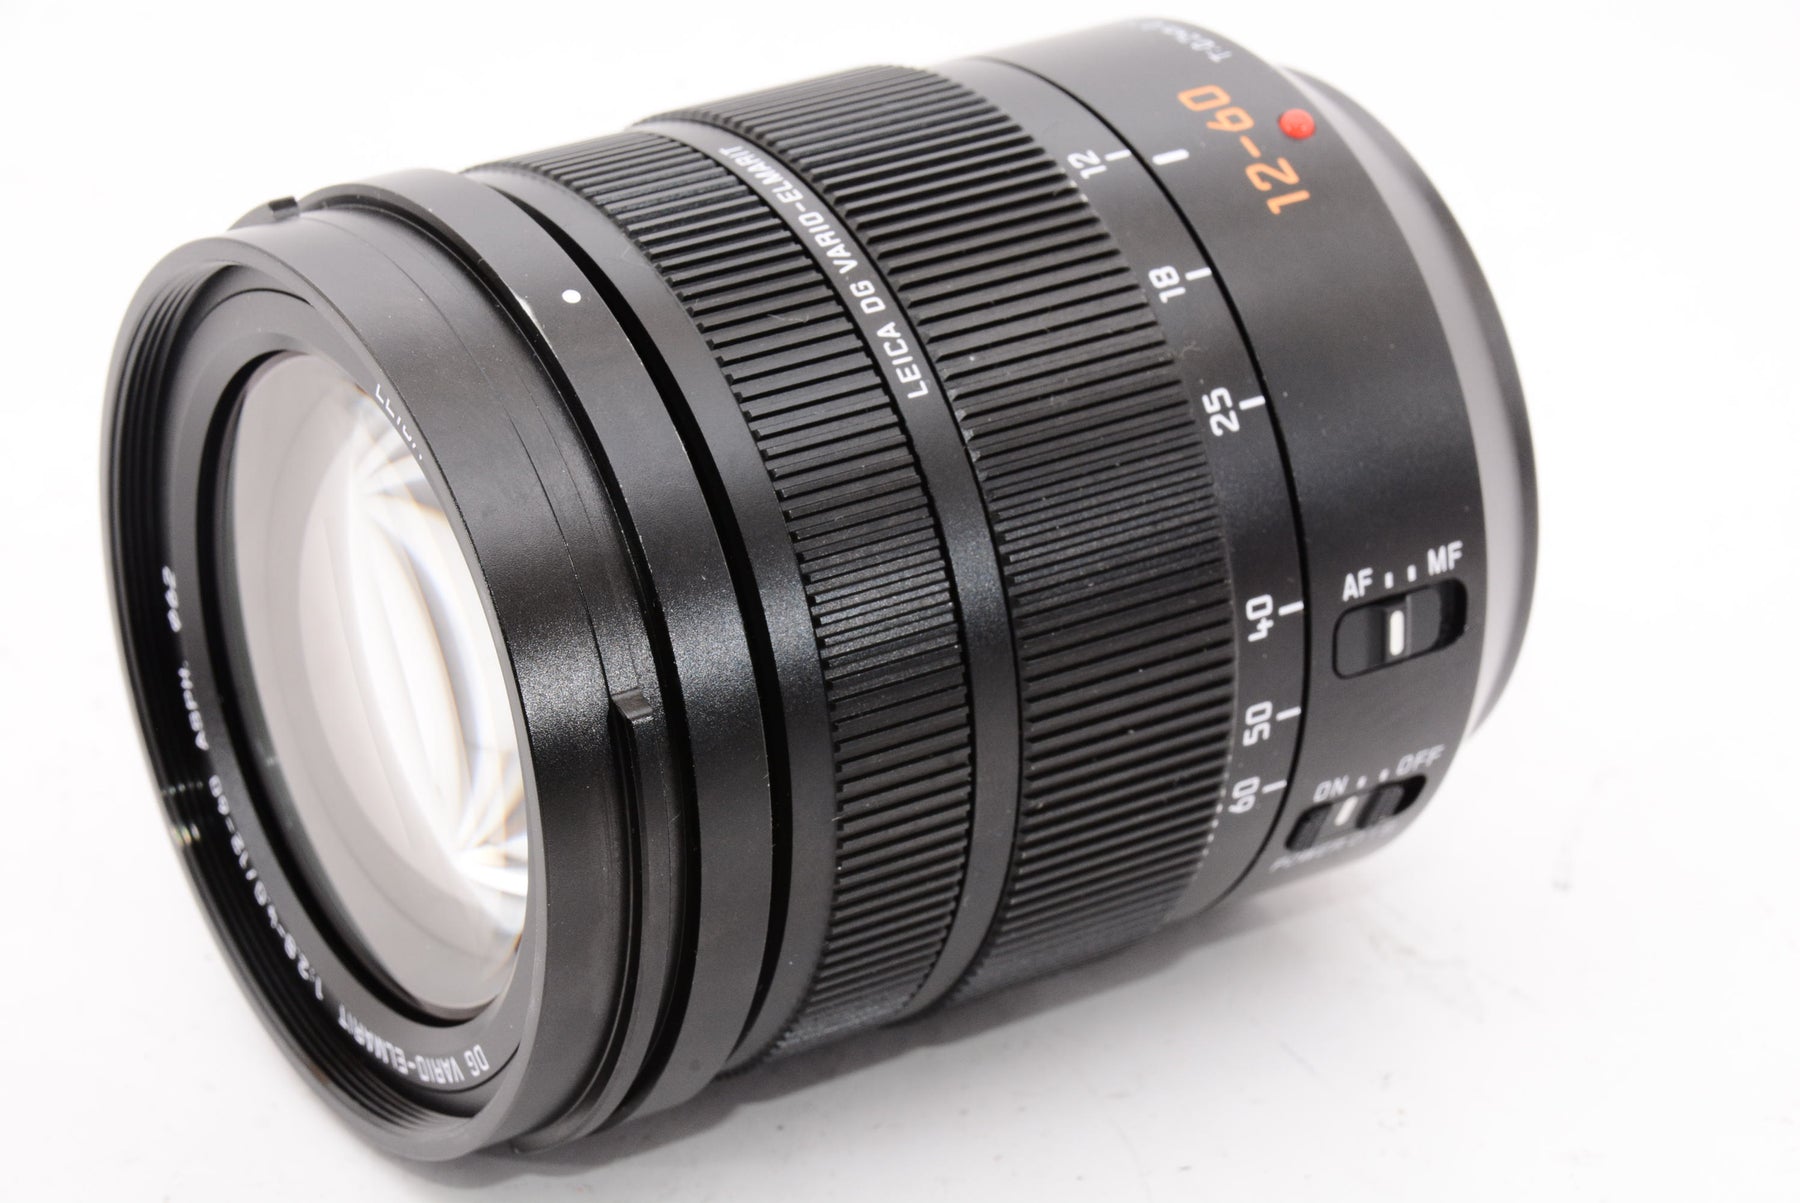 【オススメ】Panasonic LUMIX プロフェッショナル12-60mmカメラレンズ Leica DG  Vario-ELMARIT、F2.8-4.0 ASPH、デュアル I.S. 2.0 パワーO.I.S付  ミラーレスマイクロフォーサーズ、H-ES12060(ブラック)